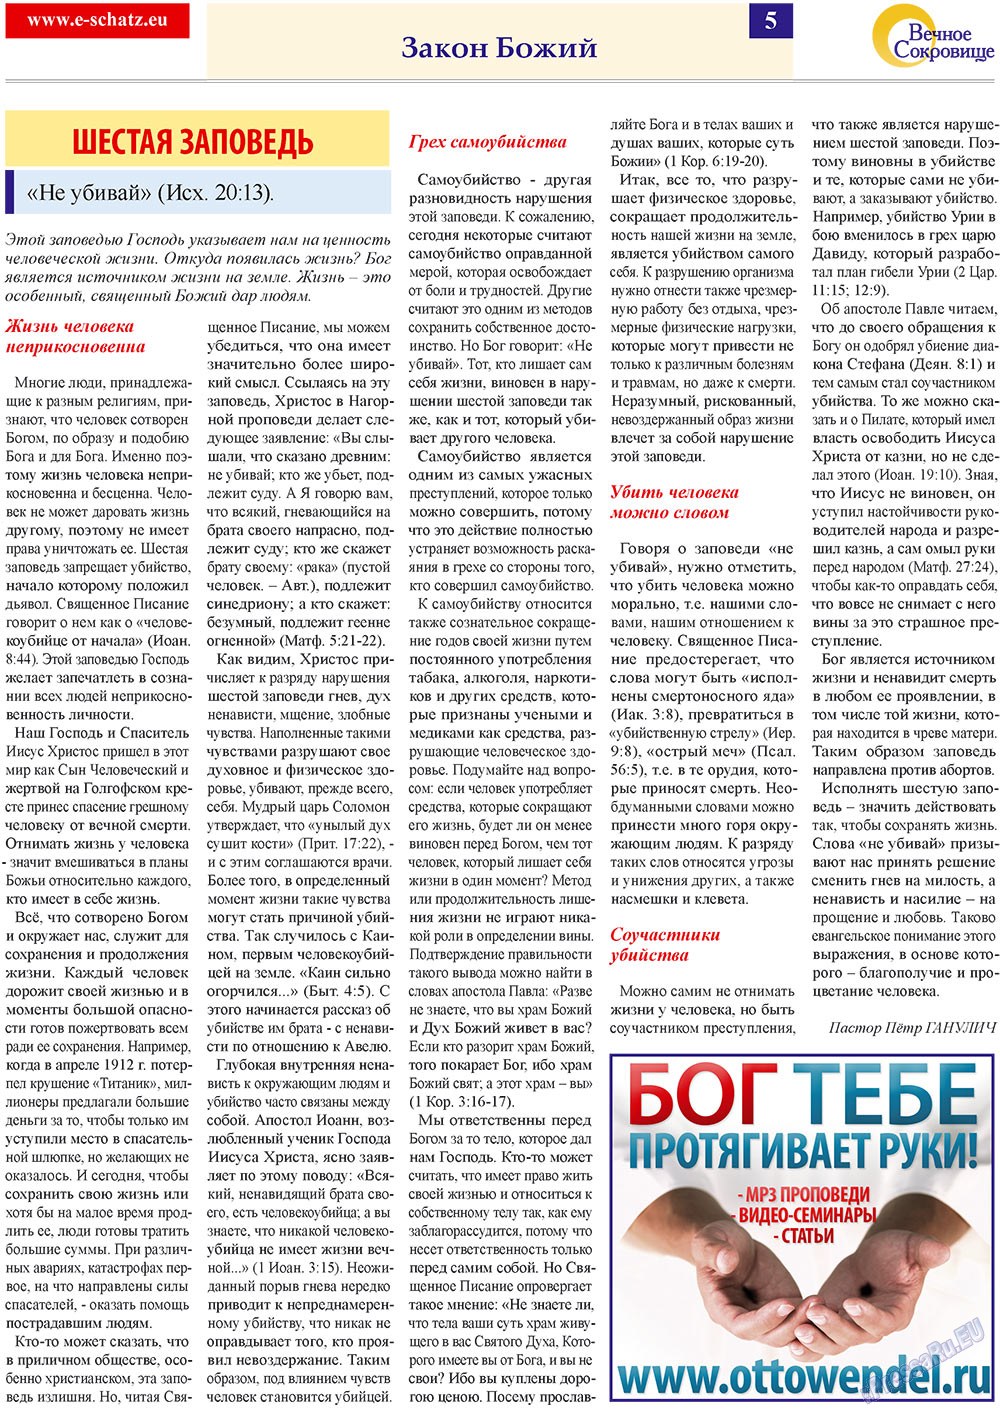 Вечное сокровище, газета. 2010 №2 стр.5